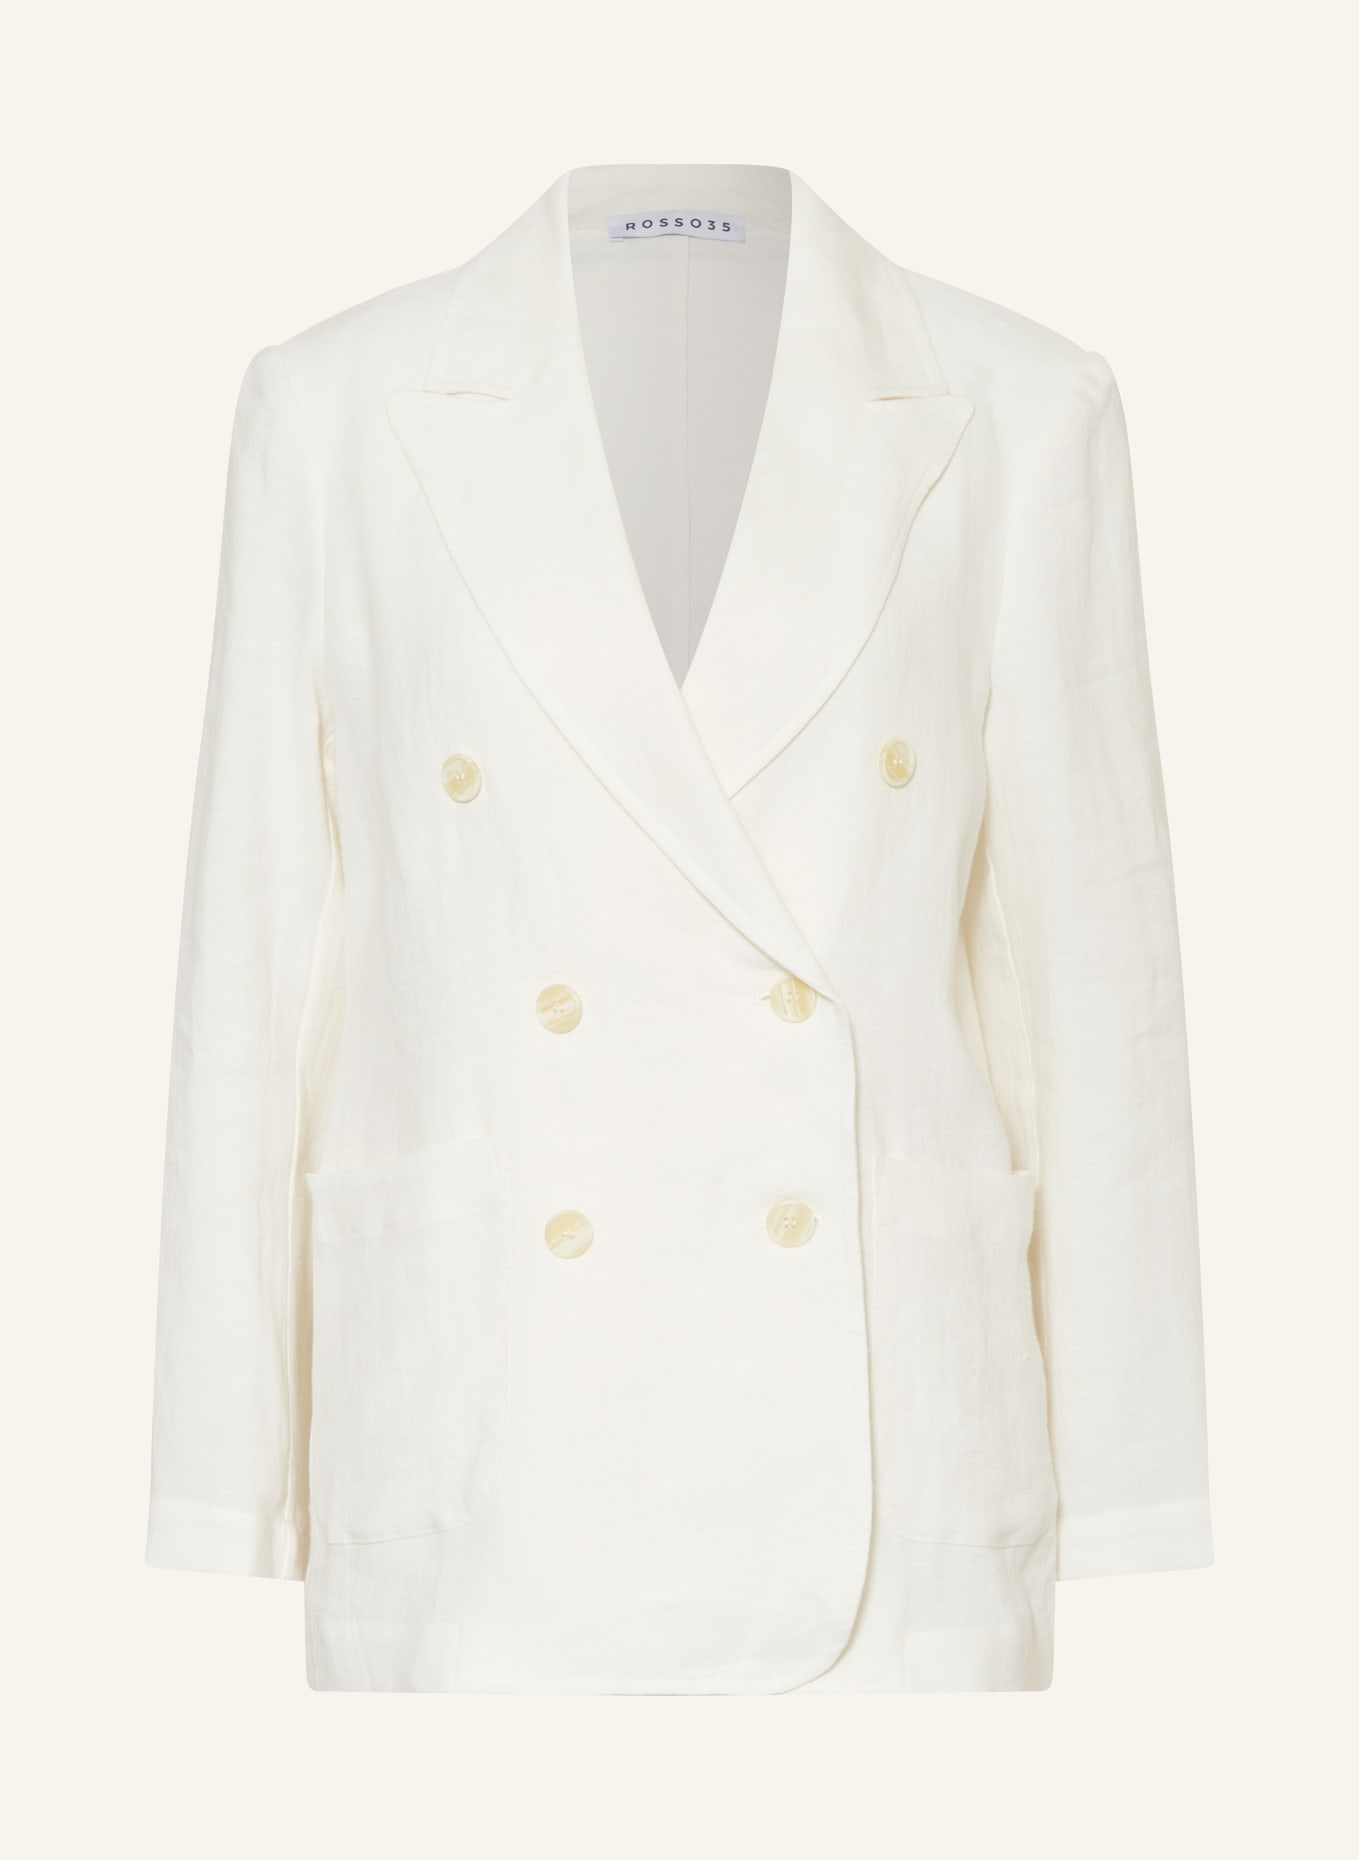 ROSSO35 Linen blazer, Color: ECRU (Image 1)